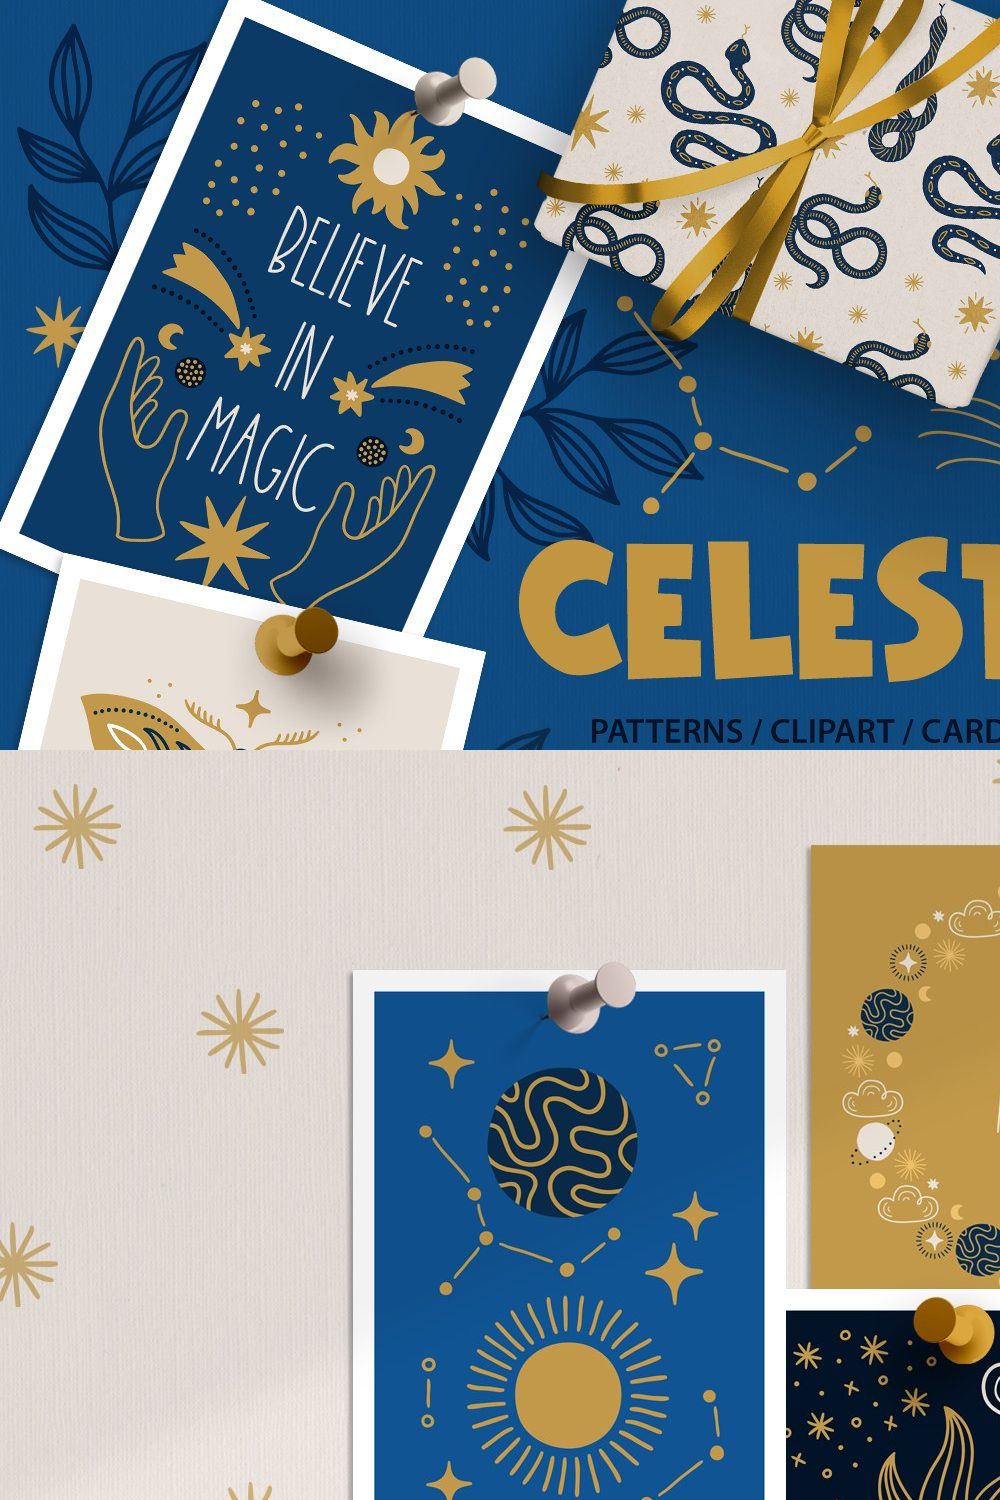 Celestial Kit pinterest preview image.